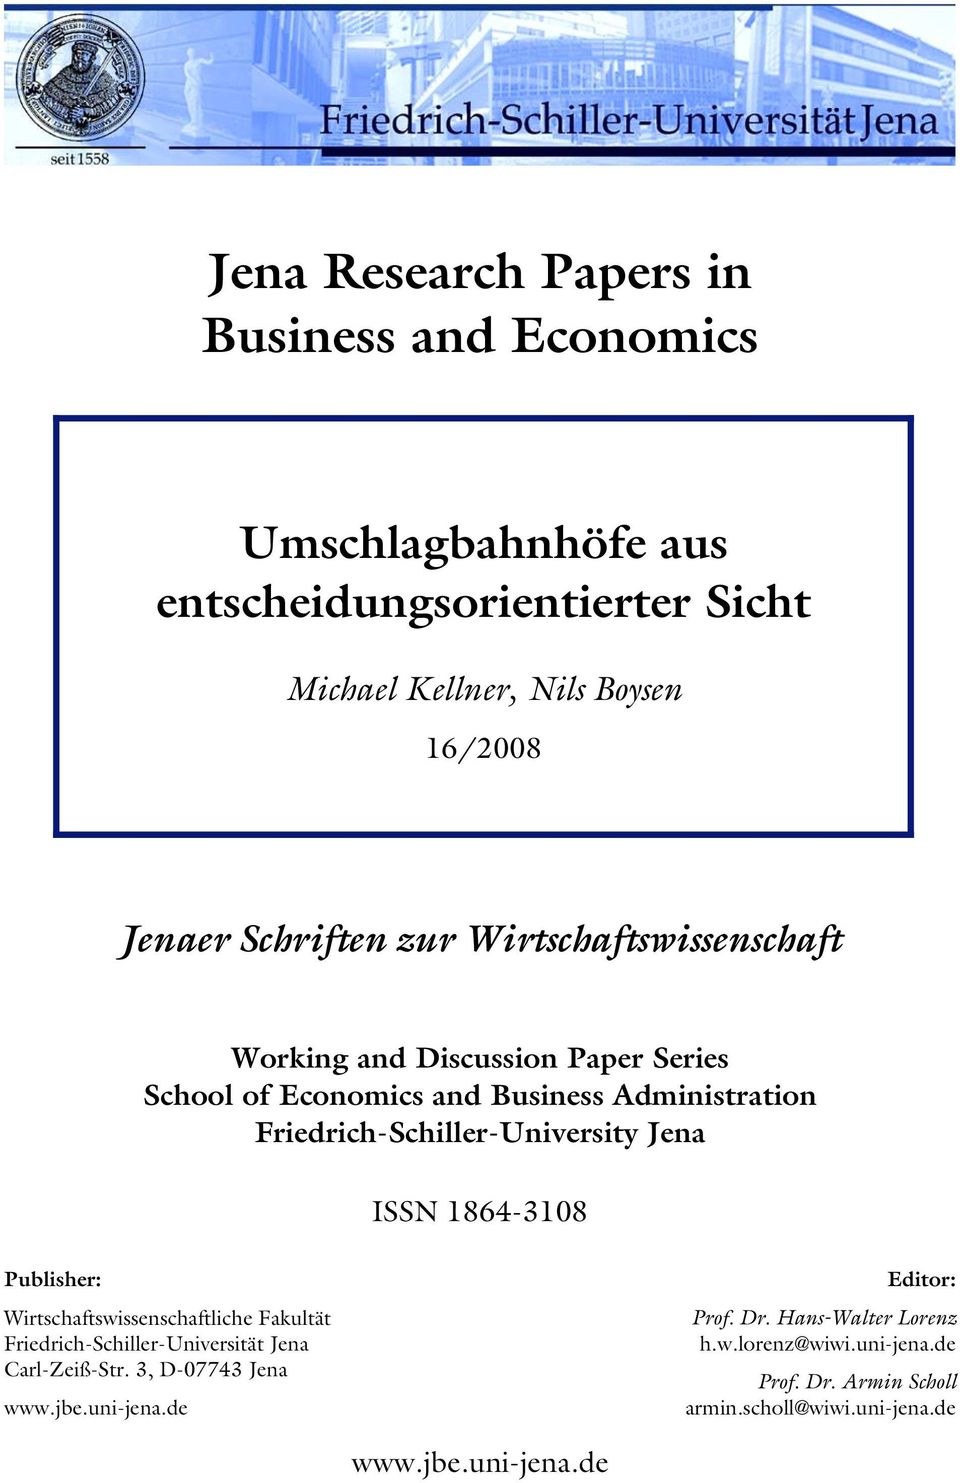 Friedrich-Schiller-University Jena ISSN 1864-3108 Publisher: Wirtschaftswissenschaftliche Fakultät Friedrich-Schiller-Universität Jena